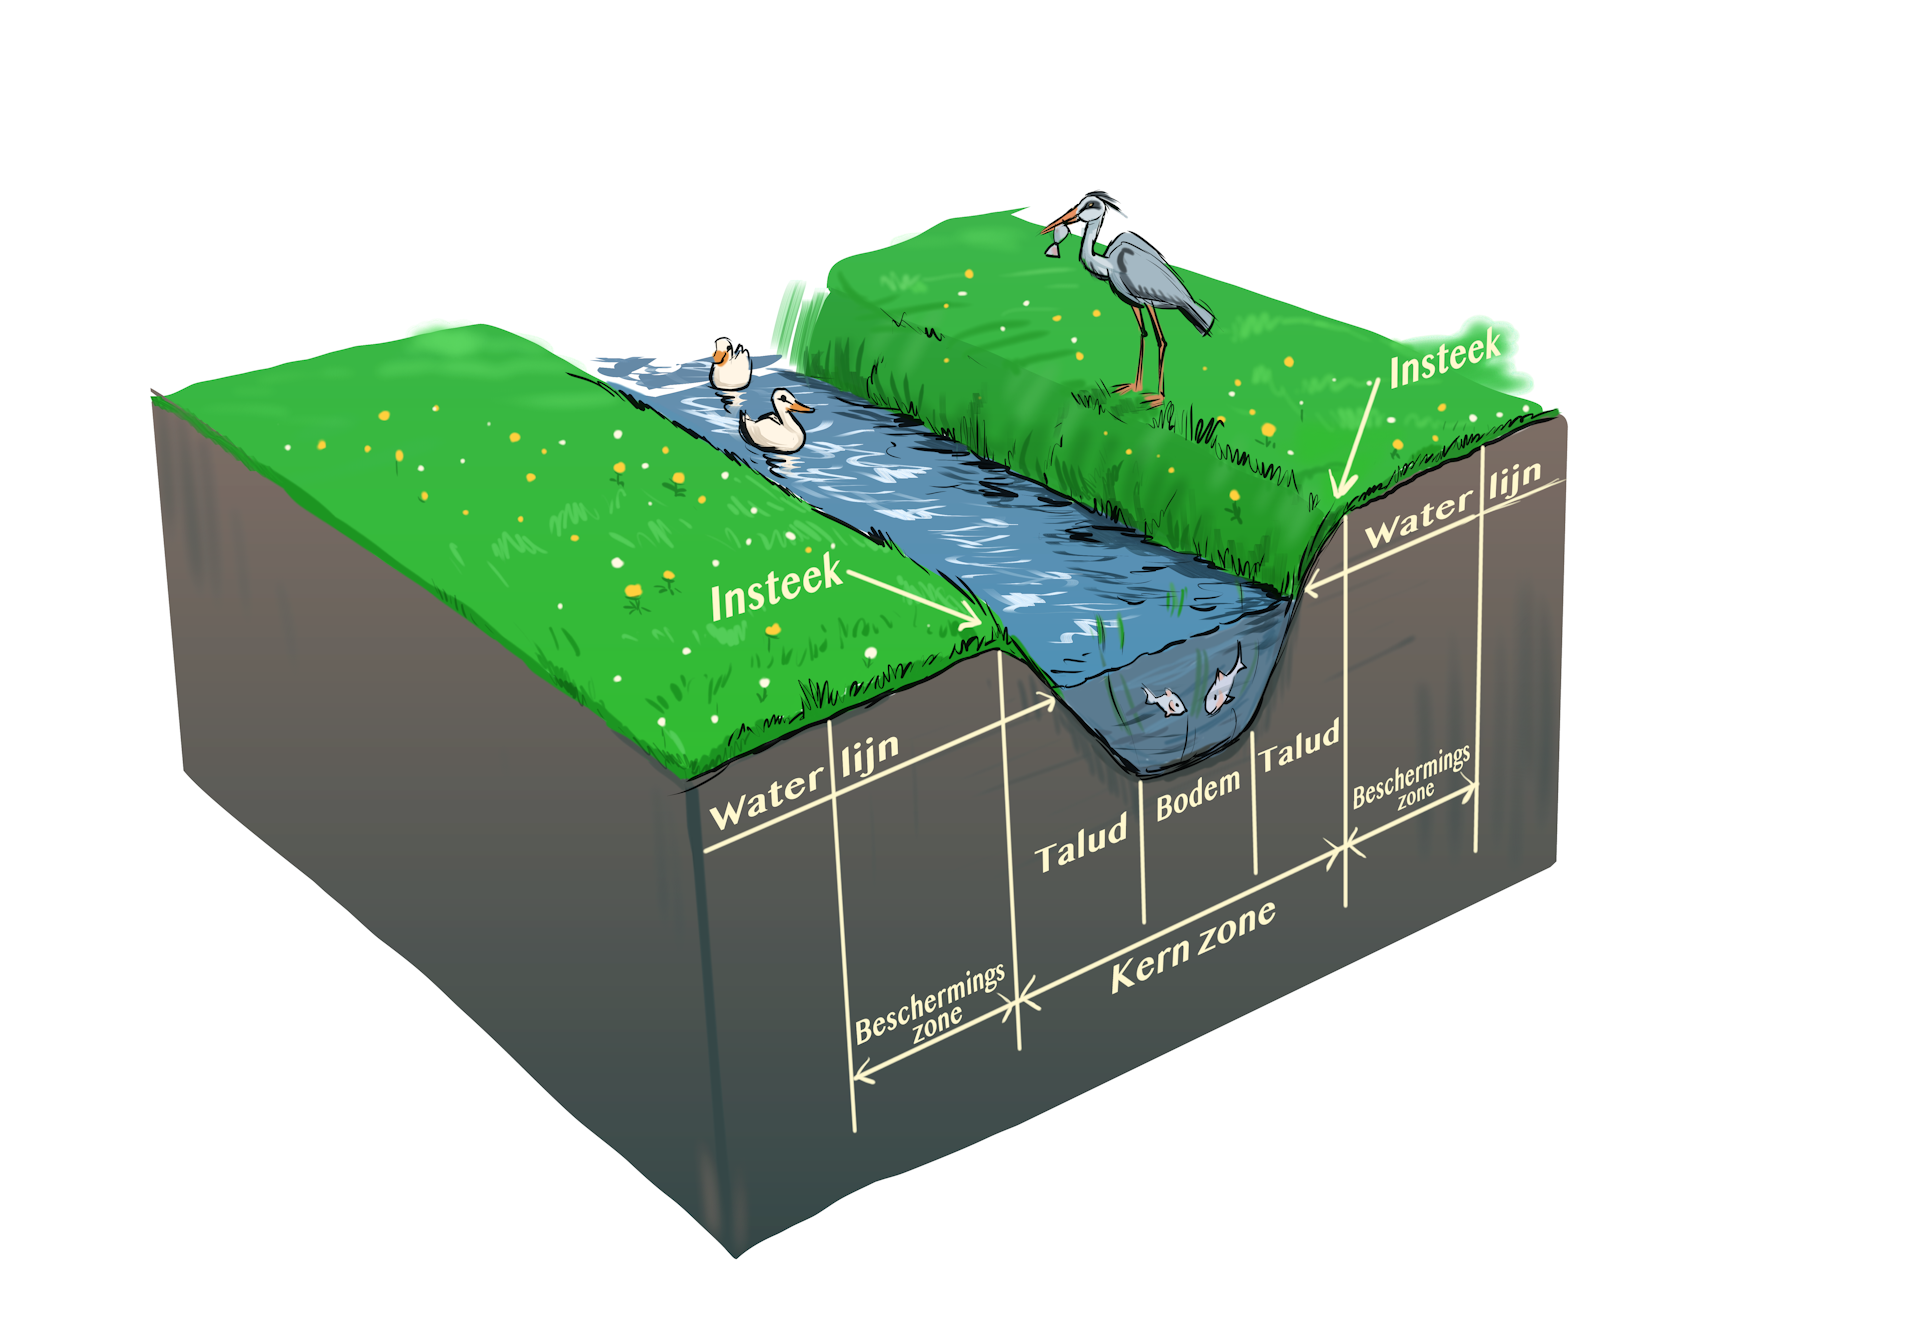 Waterschapsverordening - insteek, talud, waterlijn, bodem, kernzone